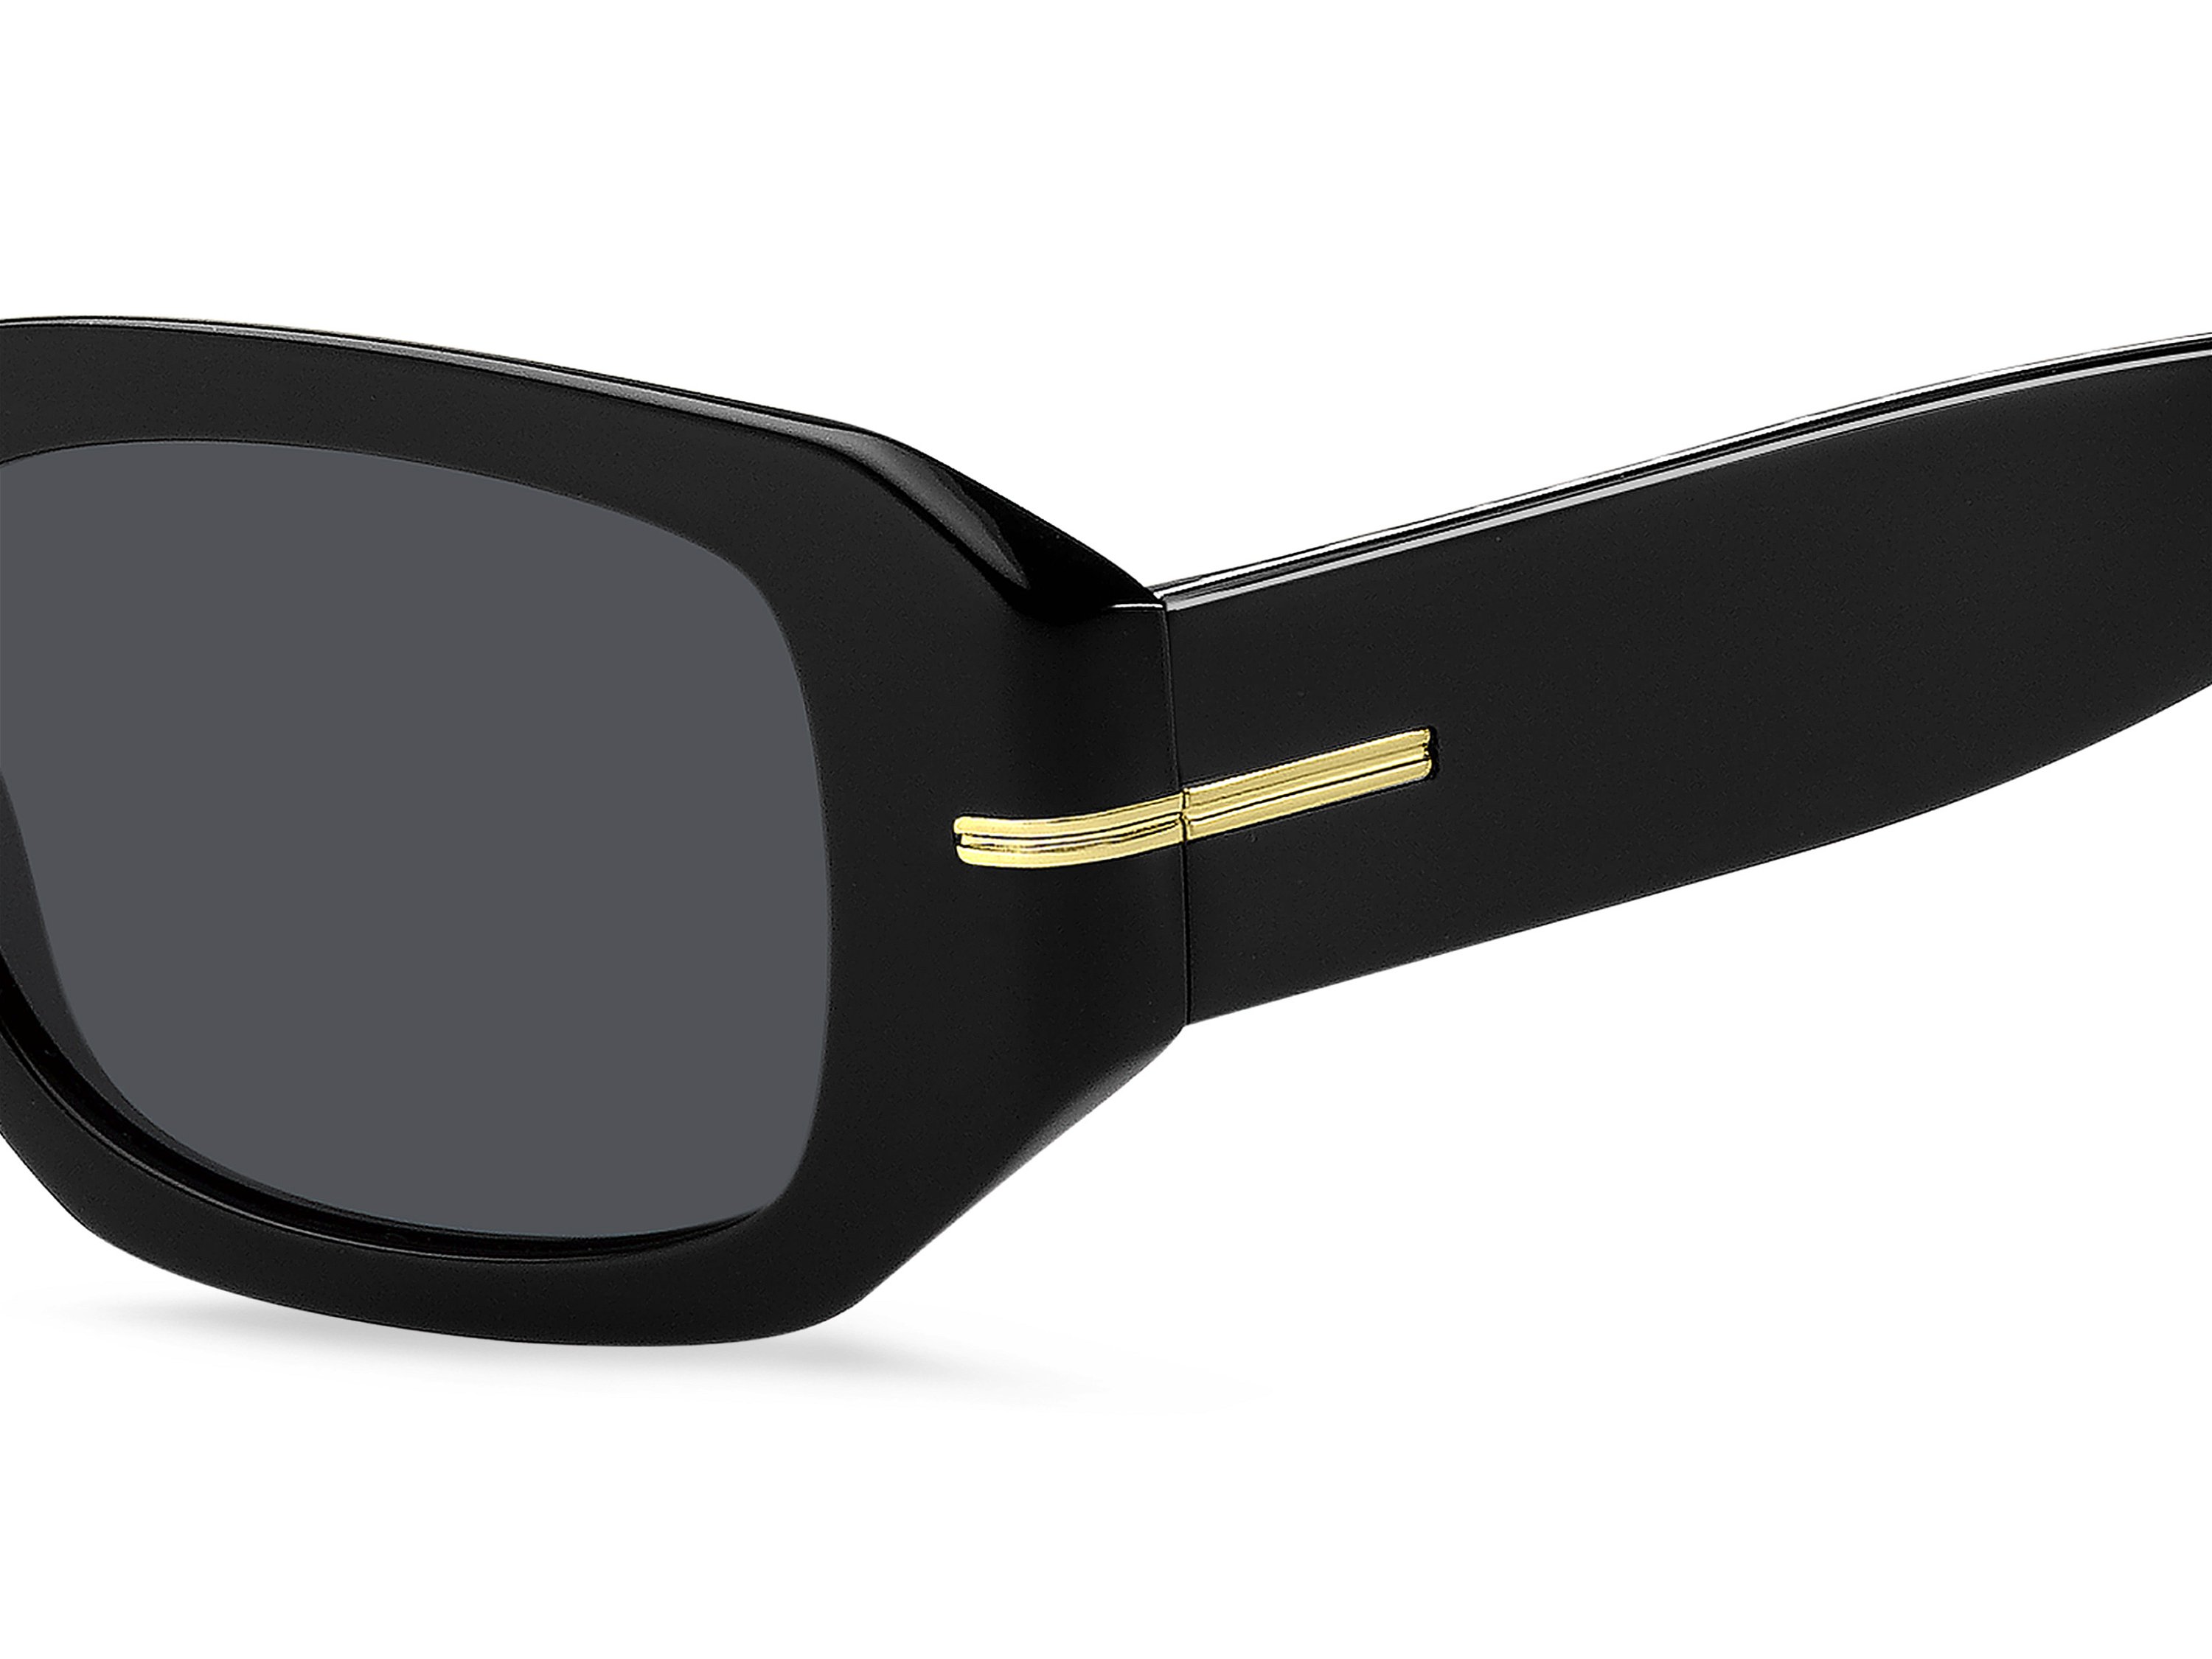 Das Bild zeigt die Sonnenbrille BOSS1608S 807 von der Marke BOSS in Schwarz.